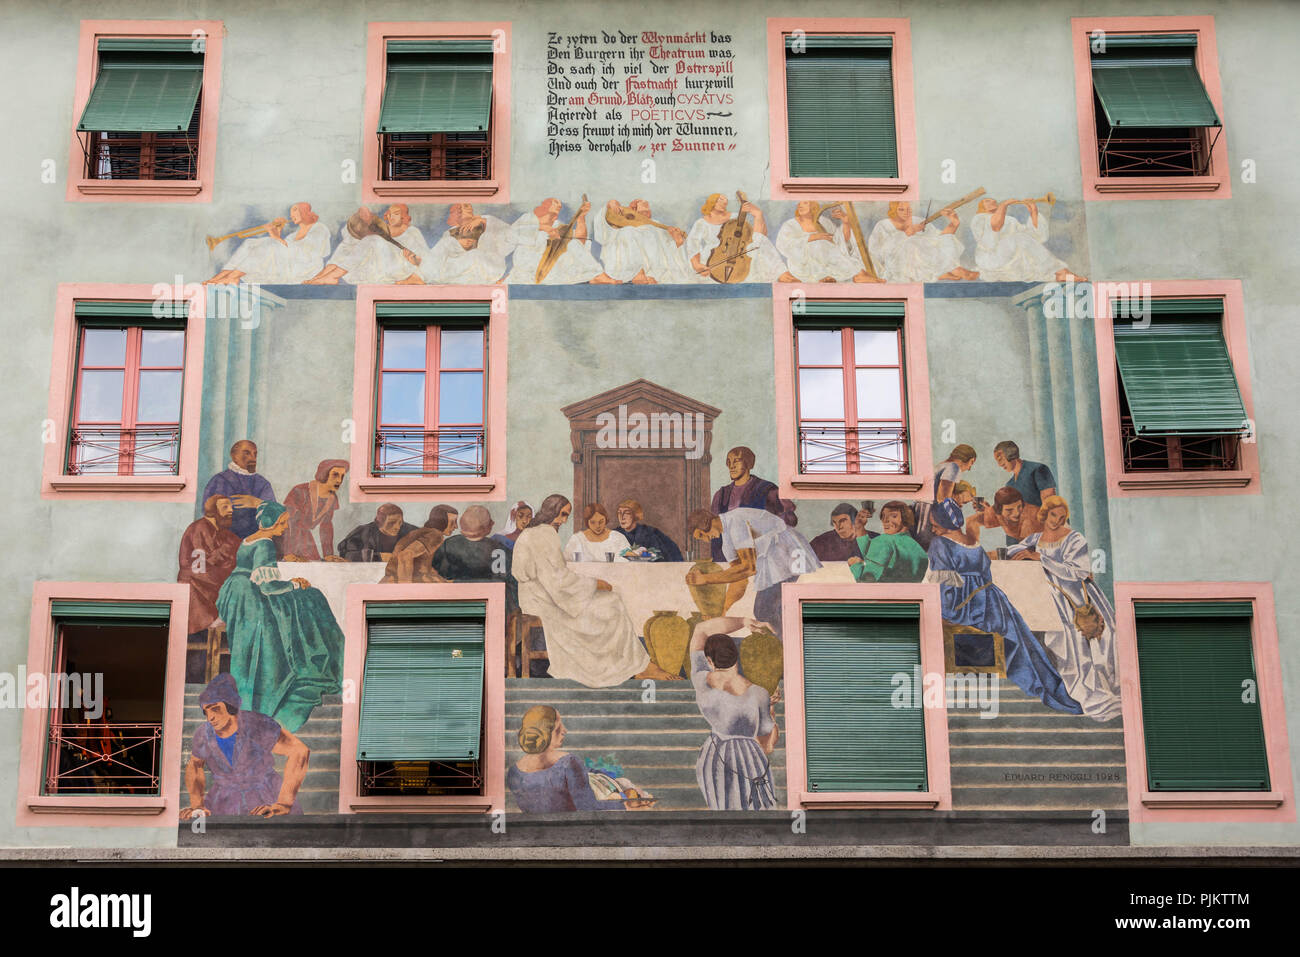 Wandmalerei in der Altstadt, Luzern, Vierwaldstätter See, Kanton Luzern,  Schweiz Stockfotografie - Alamy